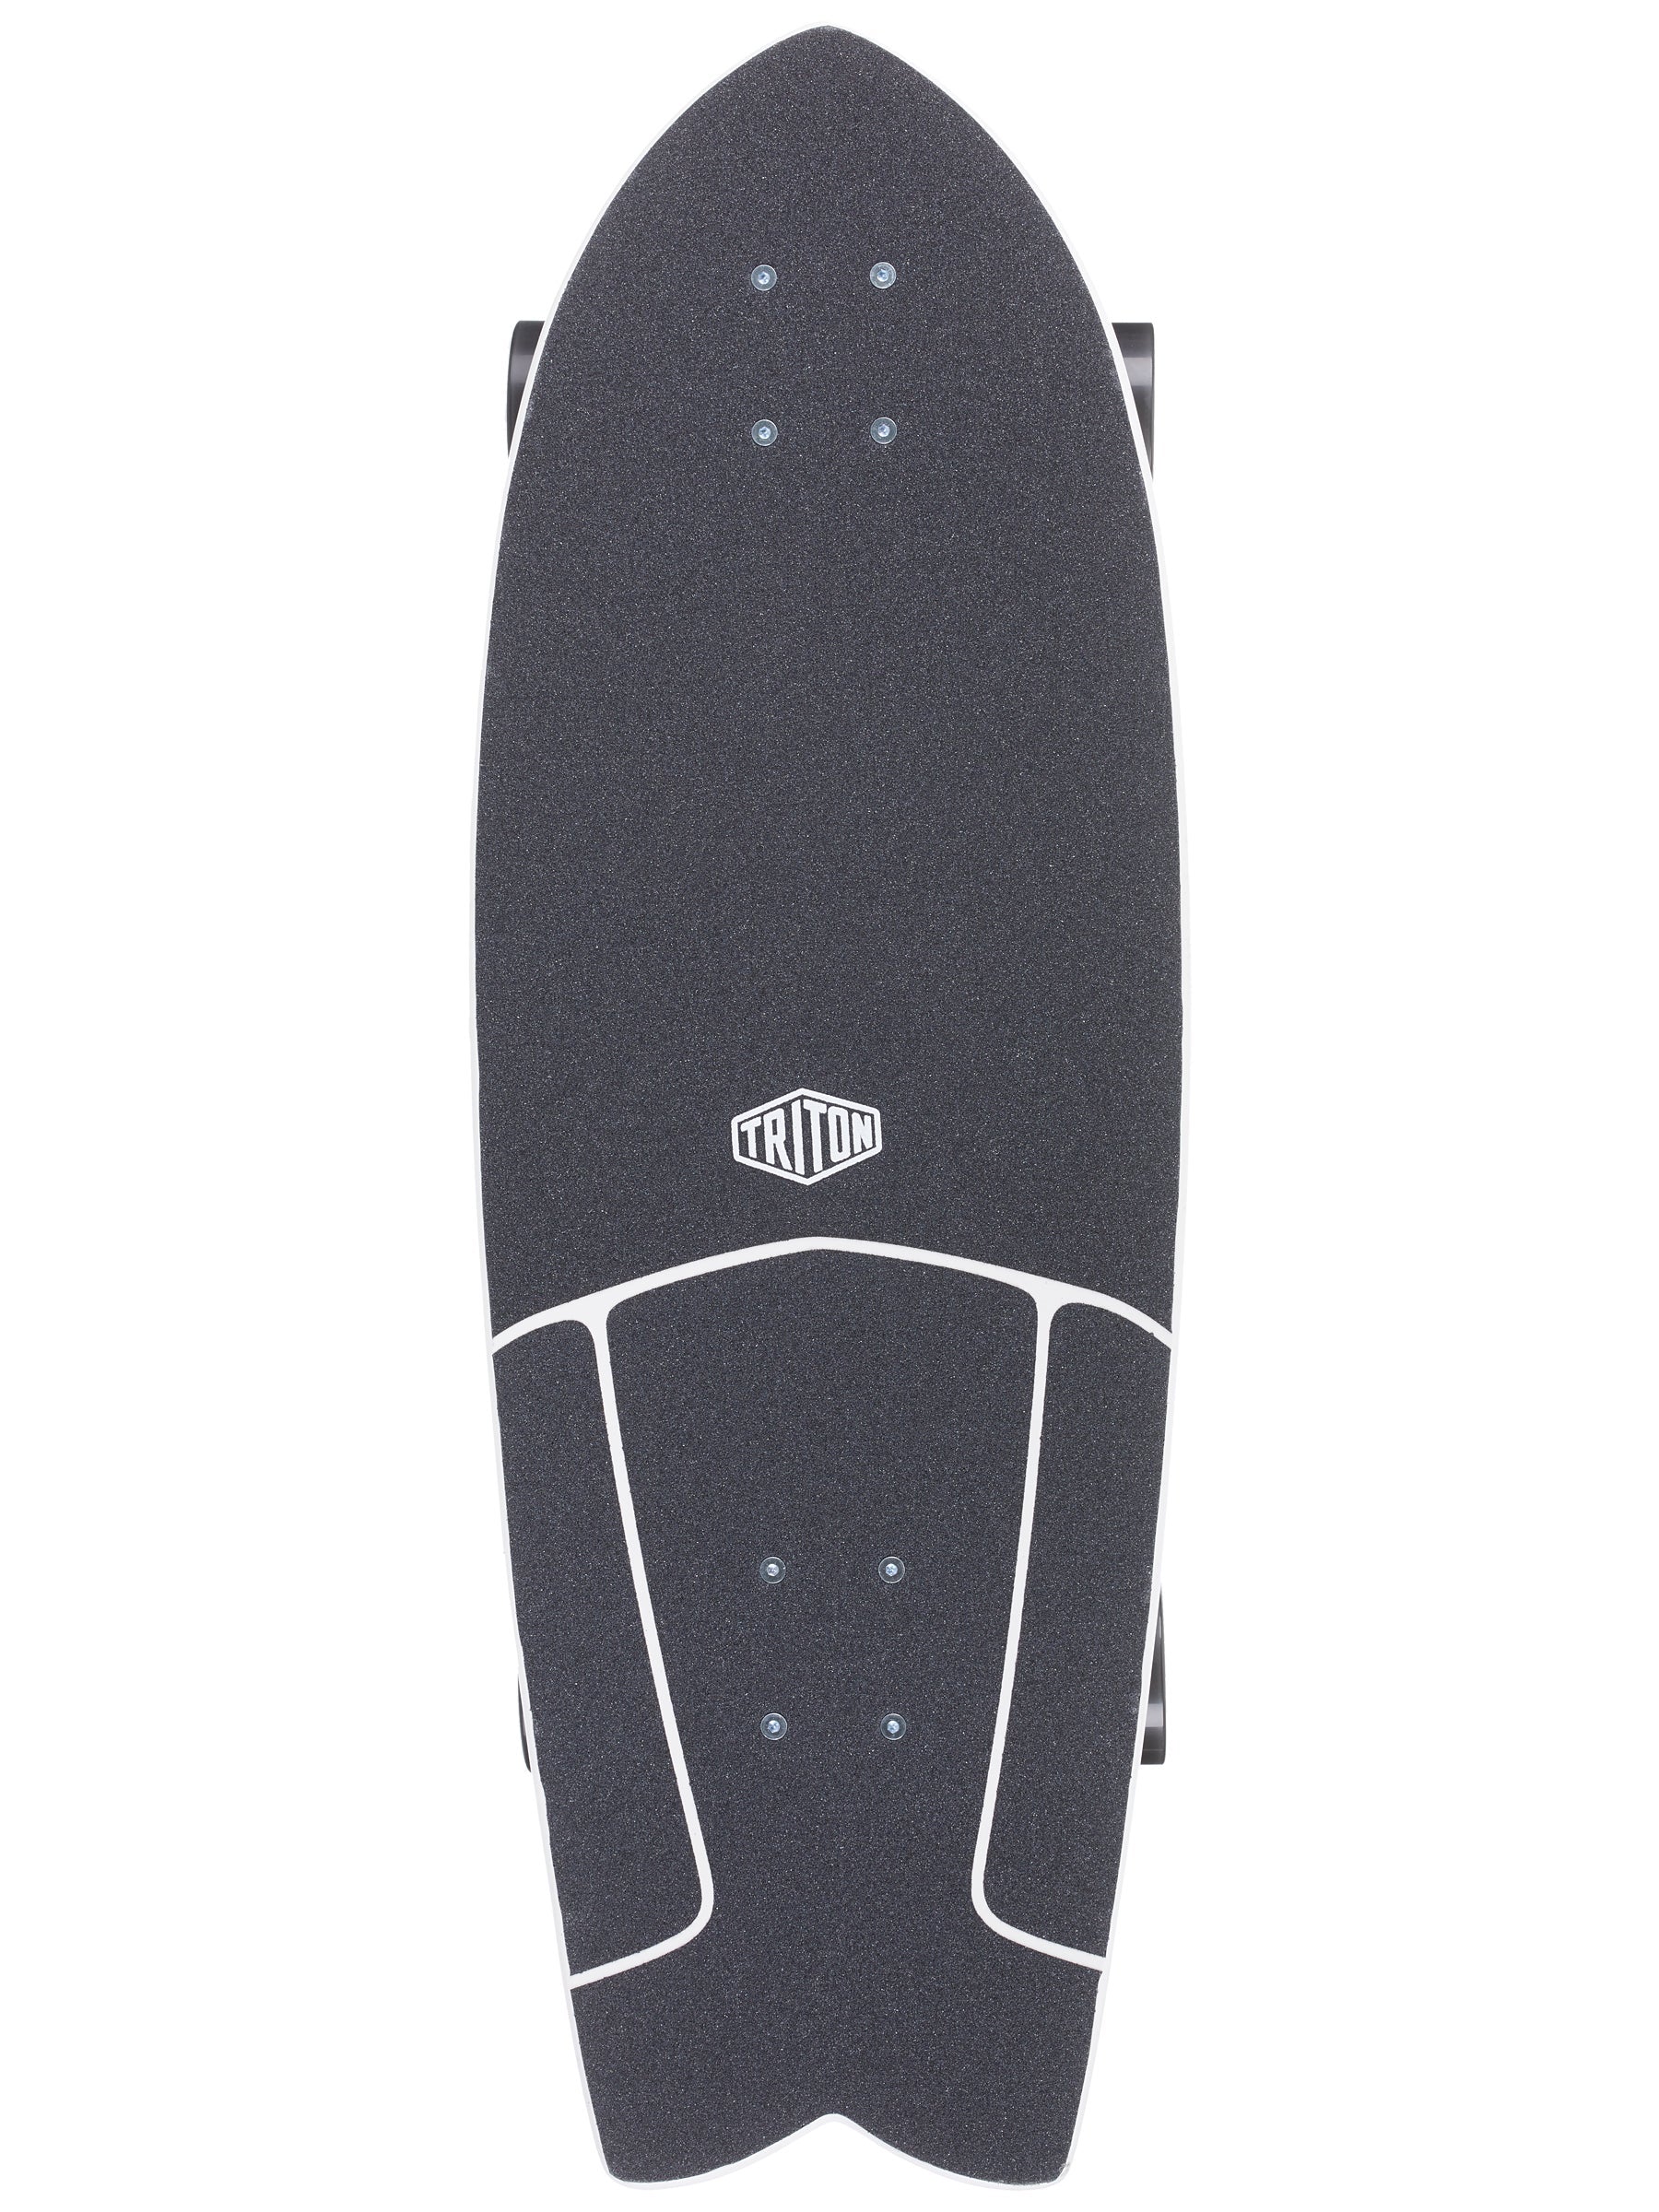 TRITO X CARVER Super Surfer SIGNAL 9.75'' X 31 INCH Complete TRITON  Skateboard Raw wave skateboard